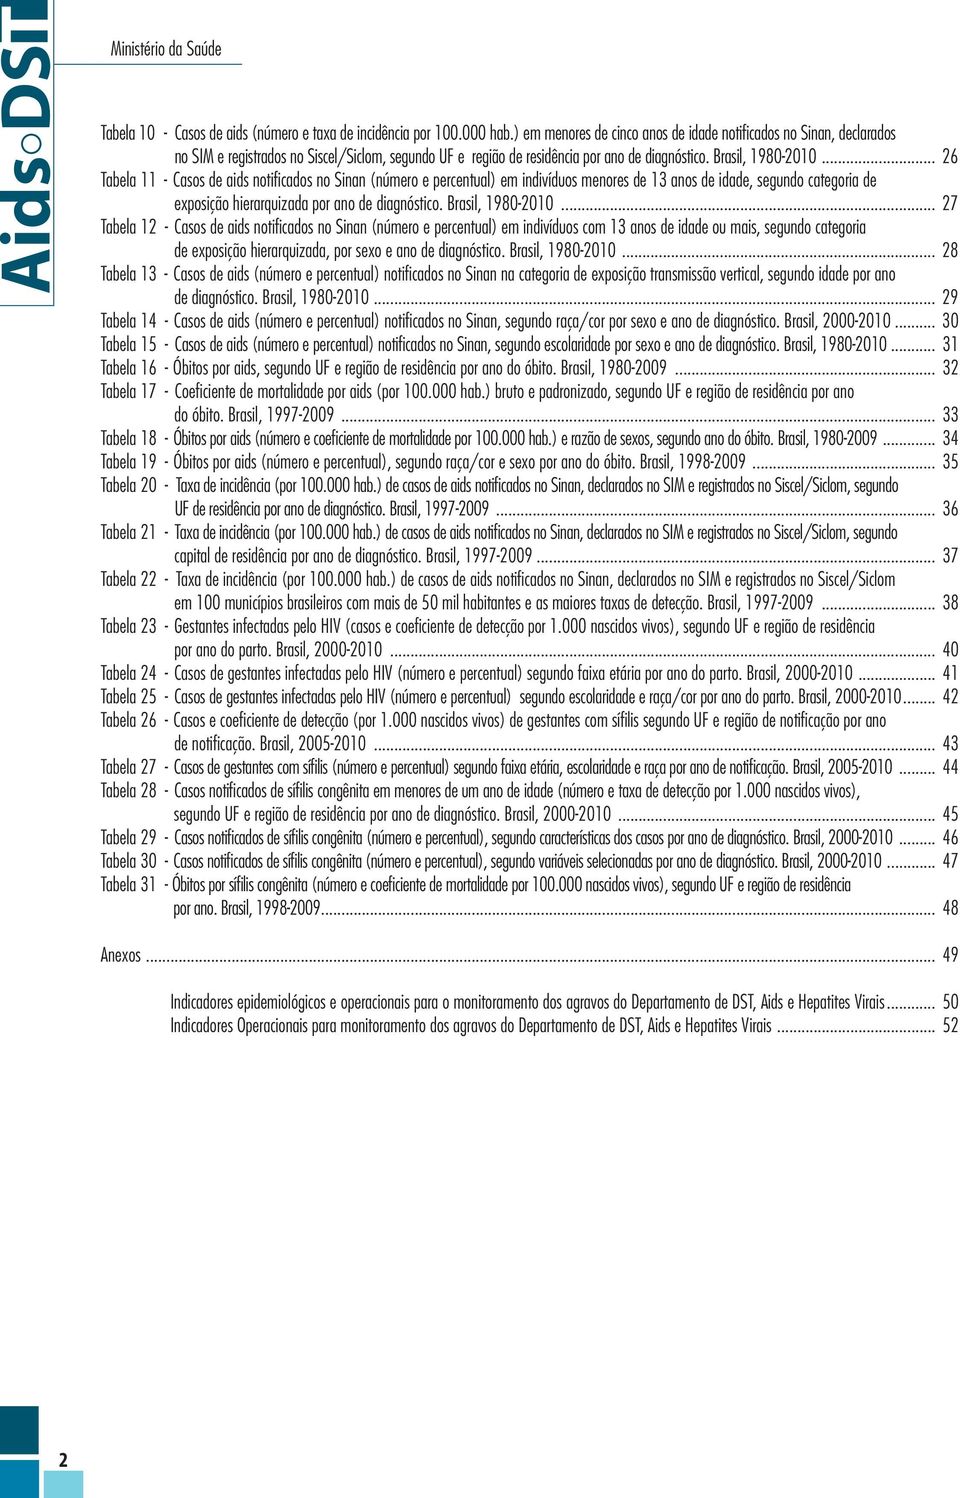 .. 26 Tabela 11 - Casos de aids notificados no Sinan (número e percentual) em indivíduos menores de 13 anos de idade, segundo categoria de exposição hierarquizada por ano de diagnóstico.